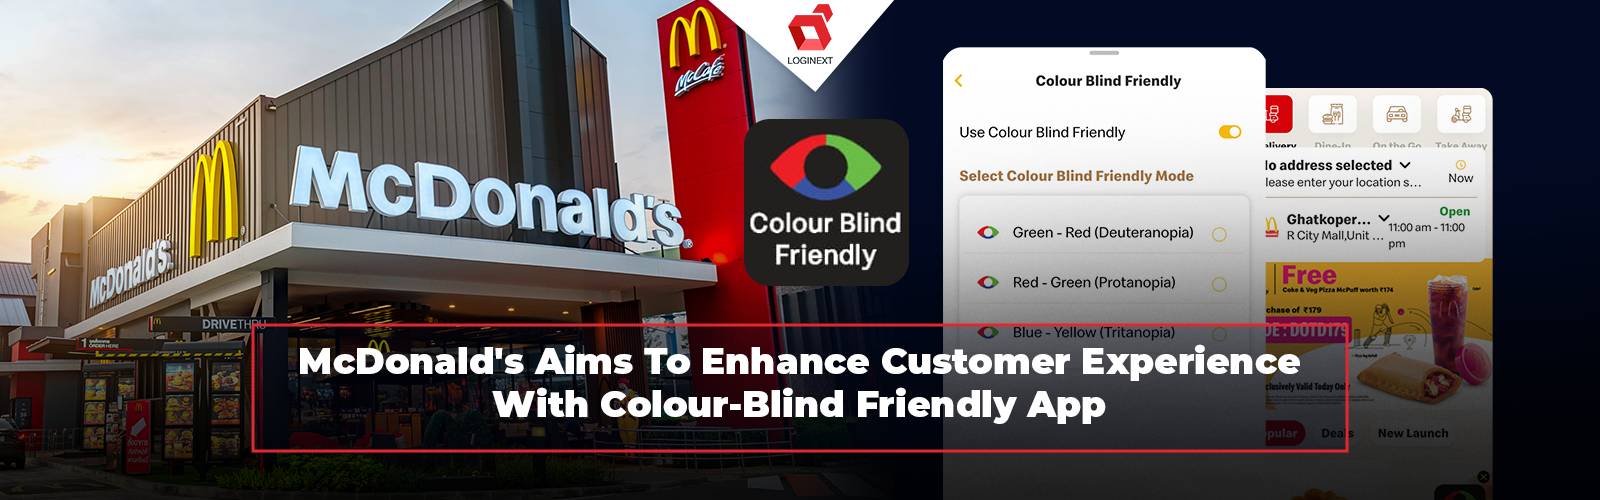 تعمل ماكدونالدز على تحسين تجربة العملاء من خلال تطبيق صديق لعمى الألوان